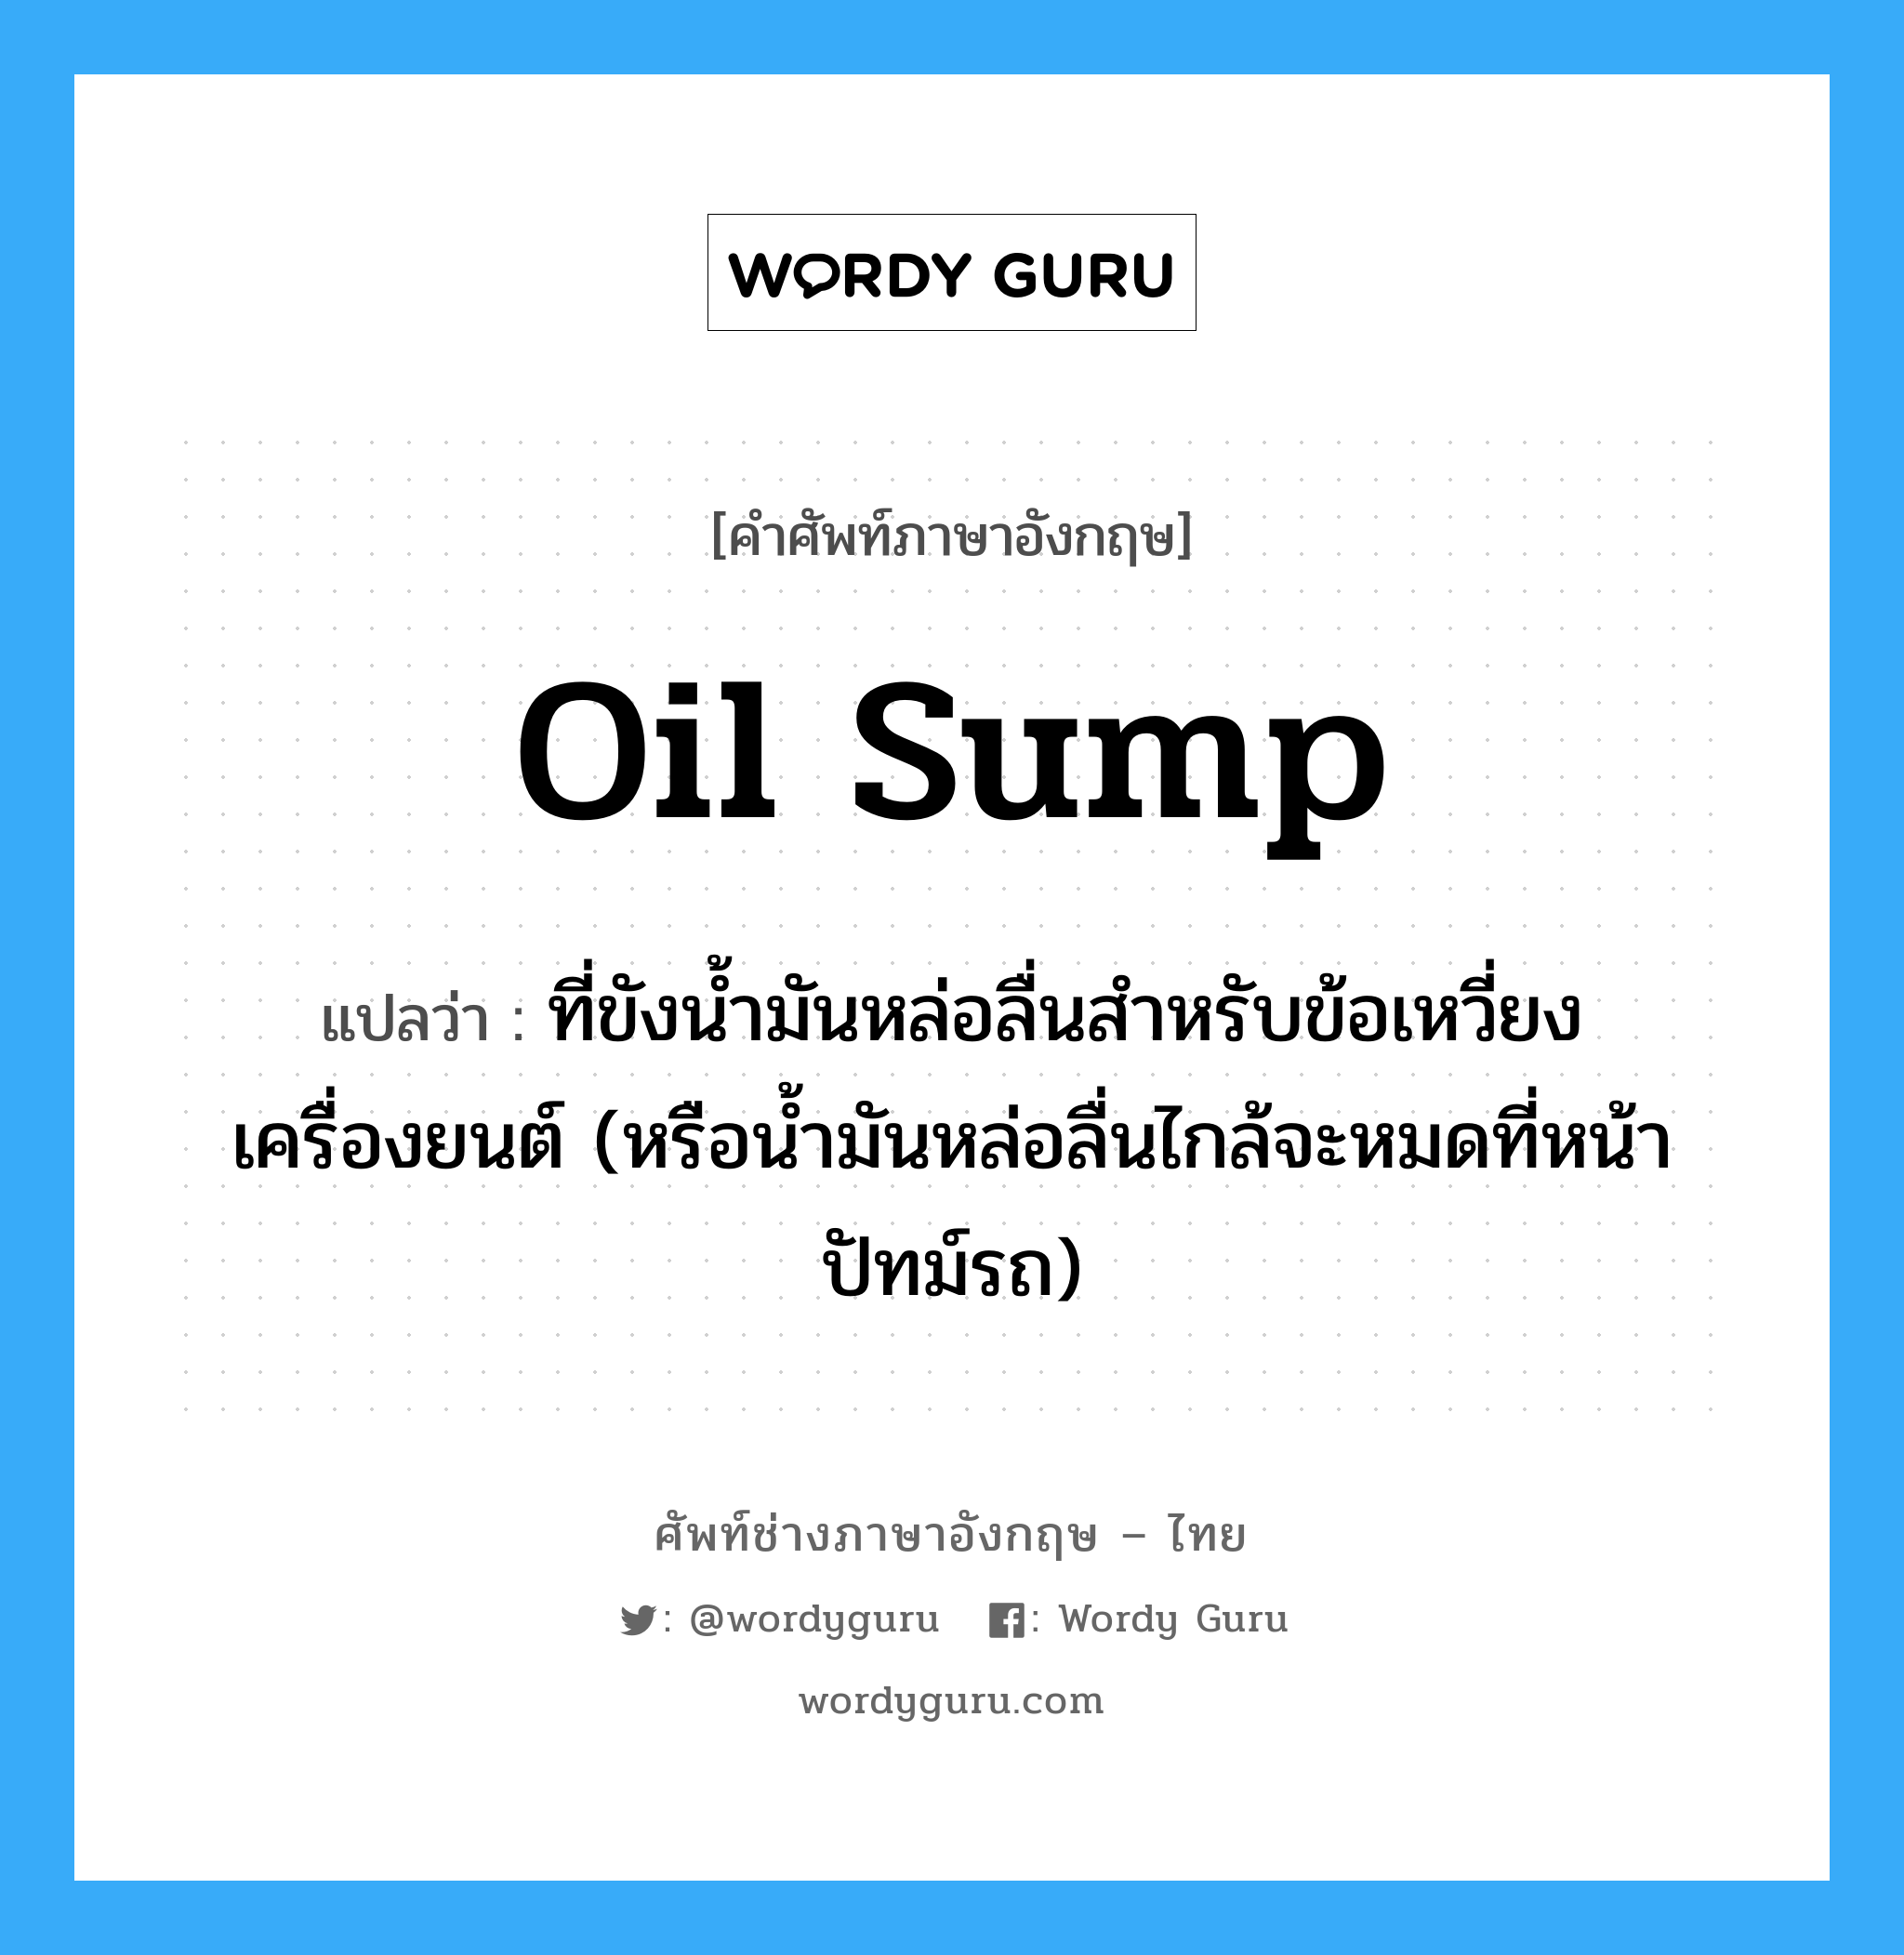 oil sump แปลว่า?, คำศัพท์ช่างภาษาอังกฤษ - ไทย oil sump คำศัพท์ภาษาอังกฤษ oil sump แปลว่า ที่ขังน้ำมันหล่อลื่นสำหรับข้อเหวี่ยงเครื่องยนต์ (หรือน้ำมันหล่อลื่นไกล้จะหมดที่หน้าปัทม์รถ)